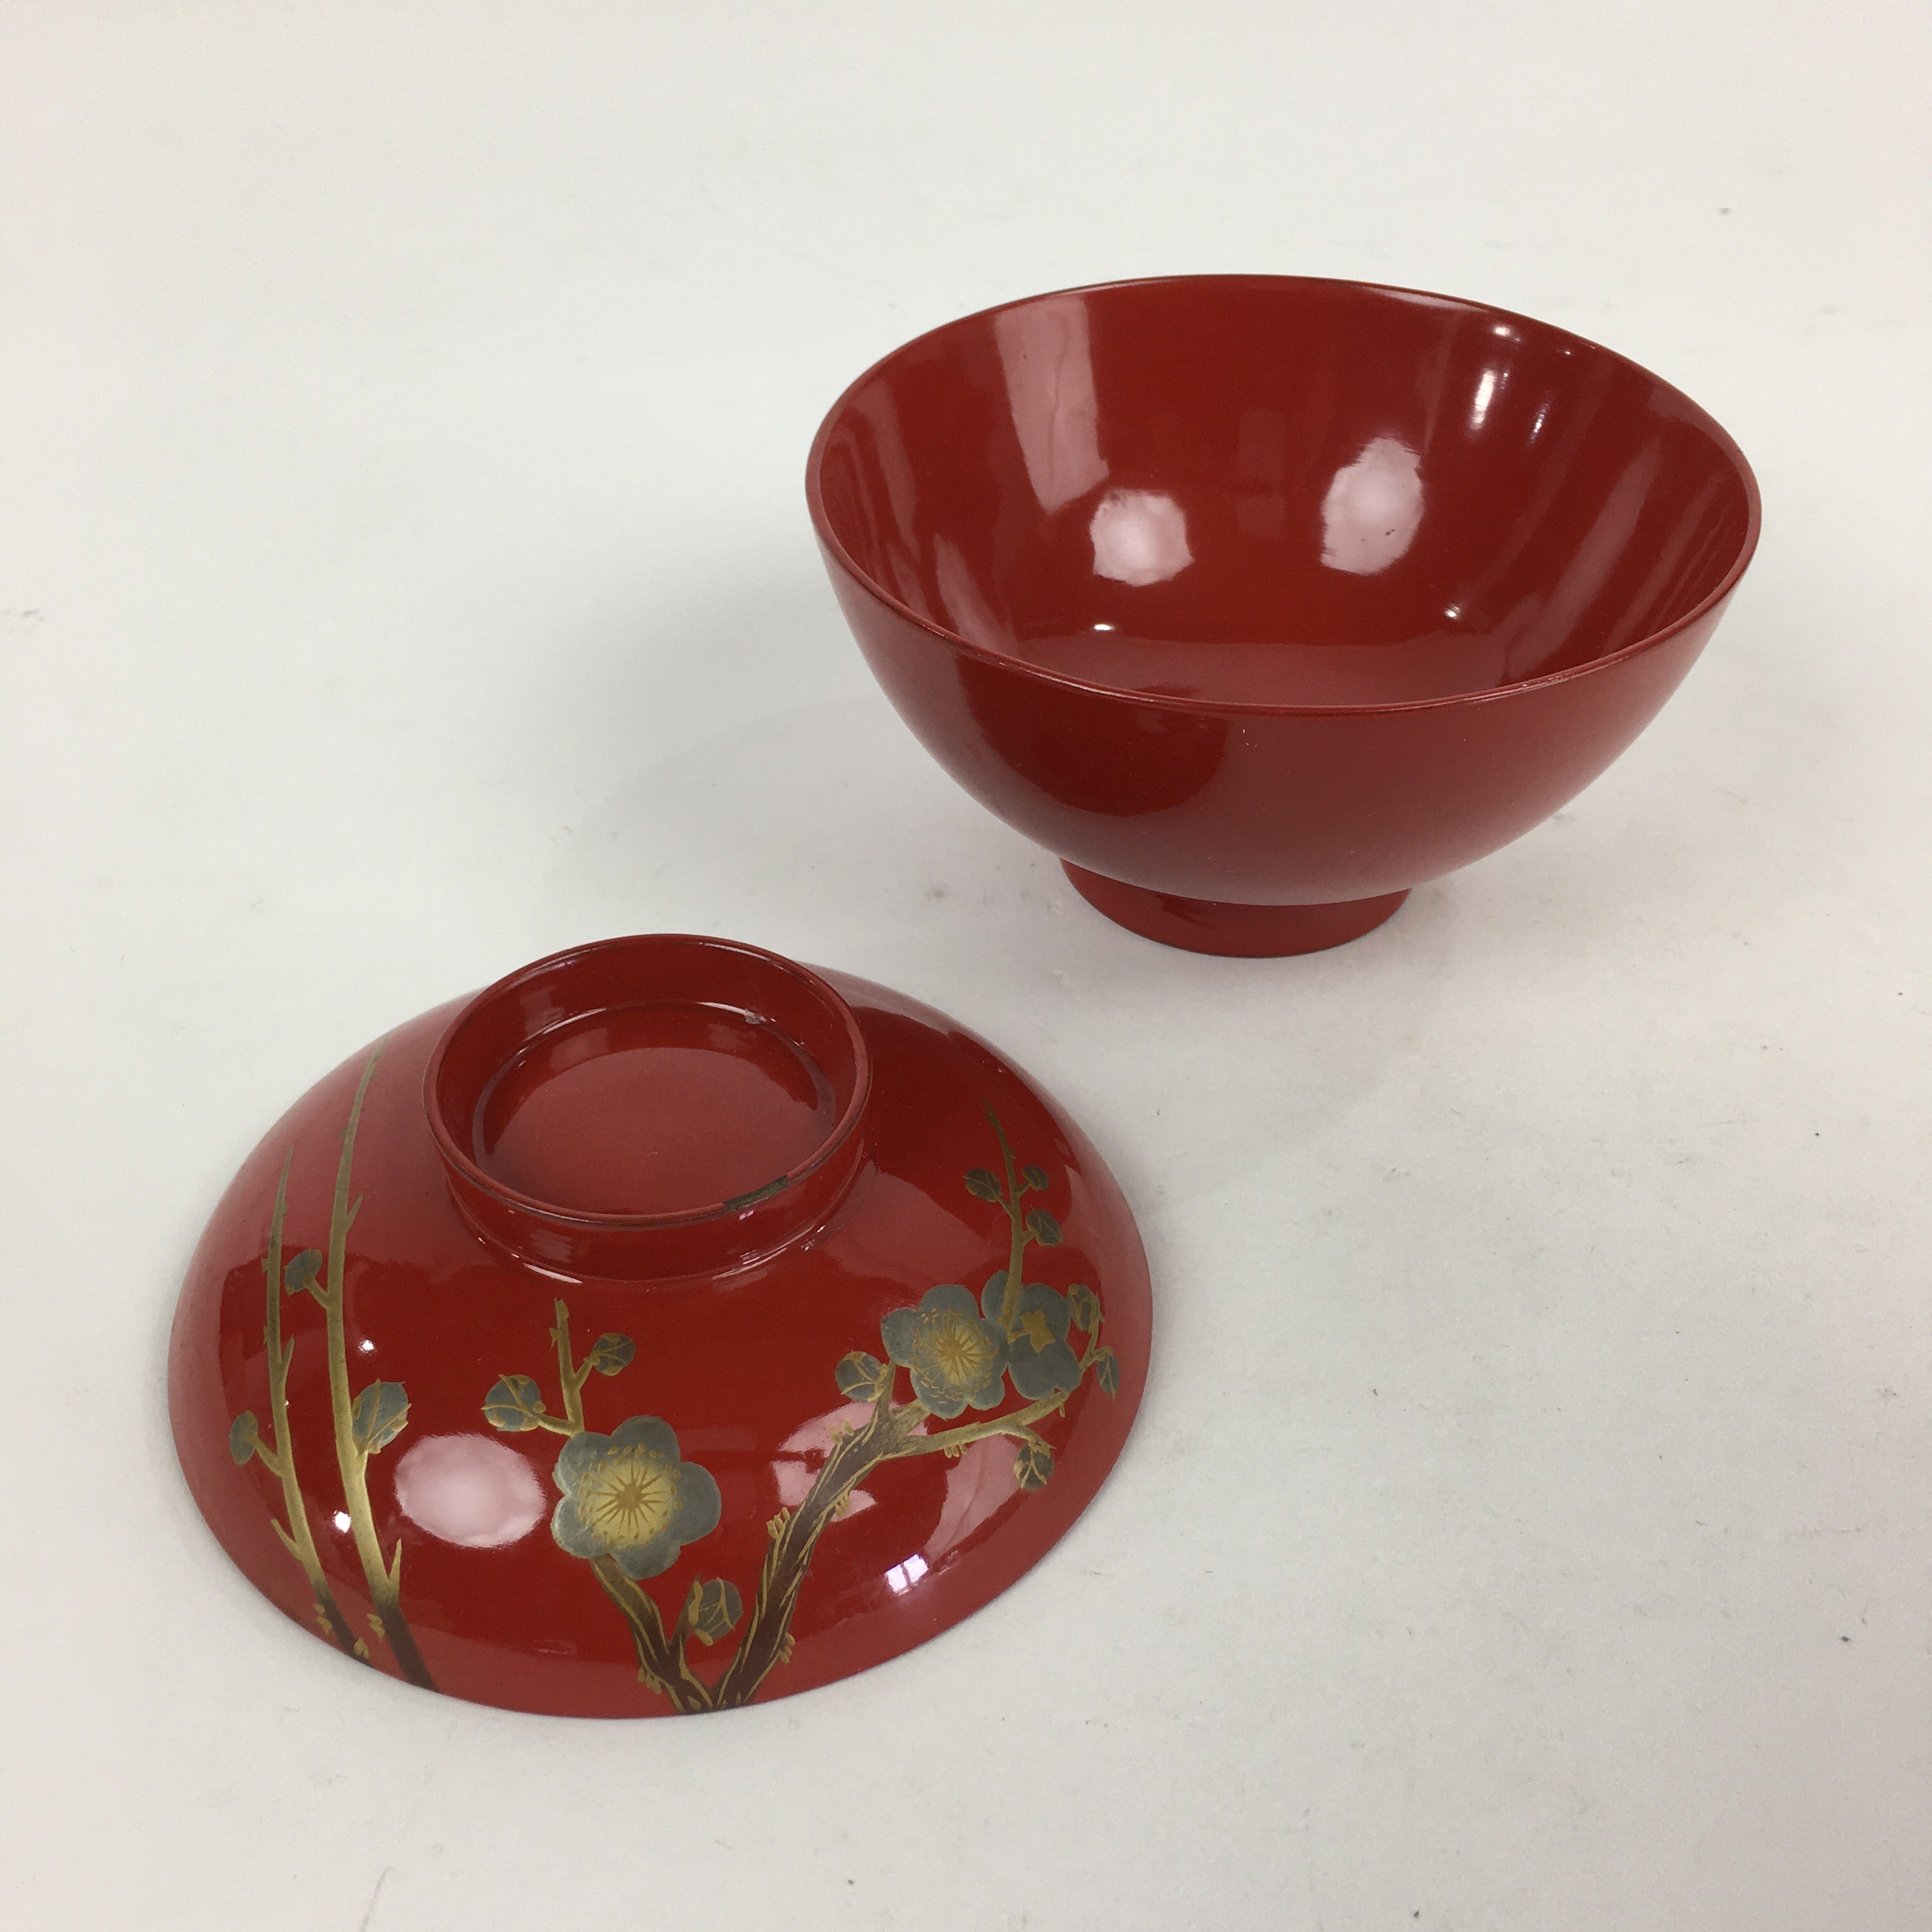 Japanese Lacquerware Lidded Bowl Vtg Maki-e Gold Owan Soup Bowl Red UR649